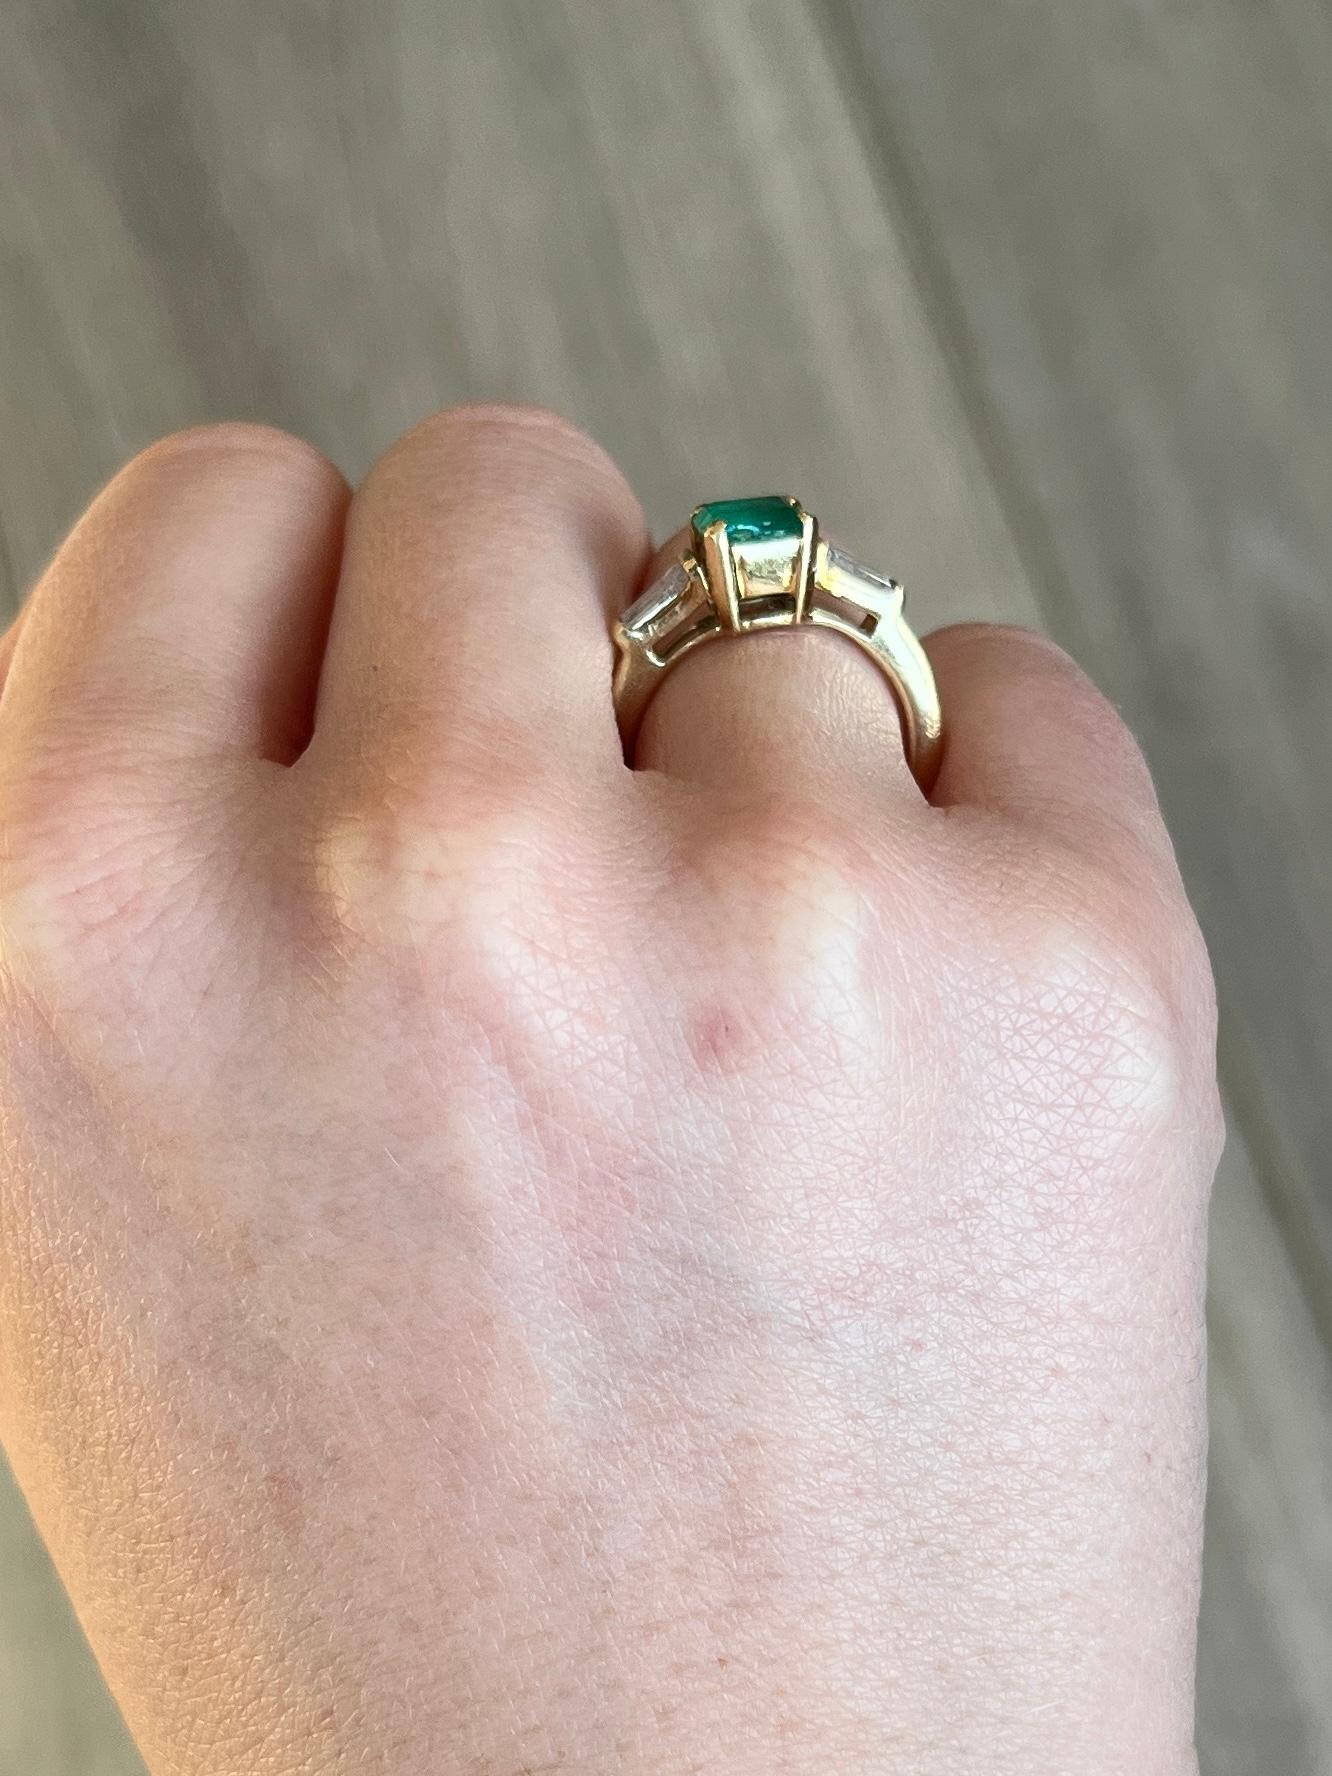 Der Smaragd in diesem Ring misst 60 Punkte und hat eine tolle Farbe. Auf beiden Seiten sitzt ein sich verjüngender Baguette-Diamant, die Diamanten insgesamt ist ca. 20pts. Der Ring ist aus 18 Karat Gold modelliert. 

Ringgröße: K 1/2 oder 5 1/2